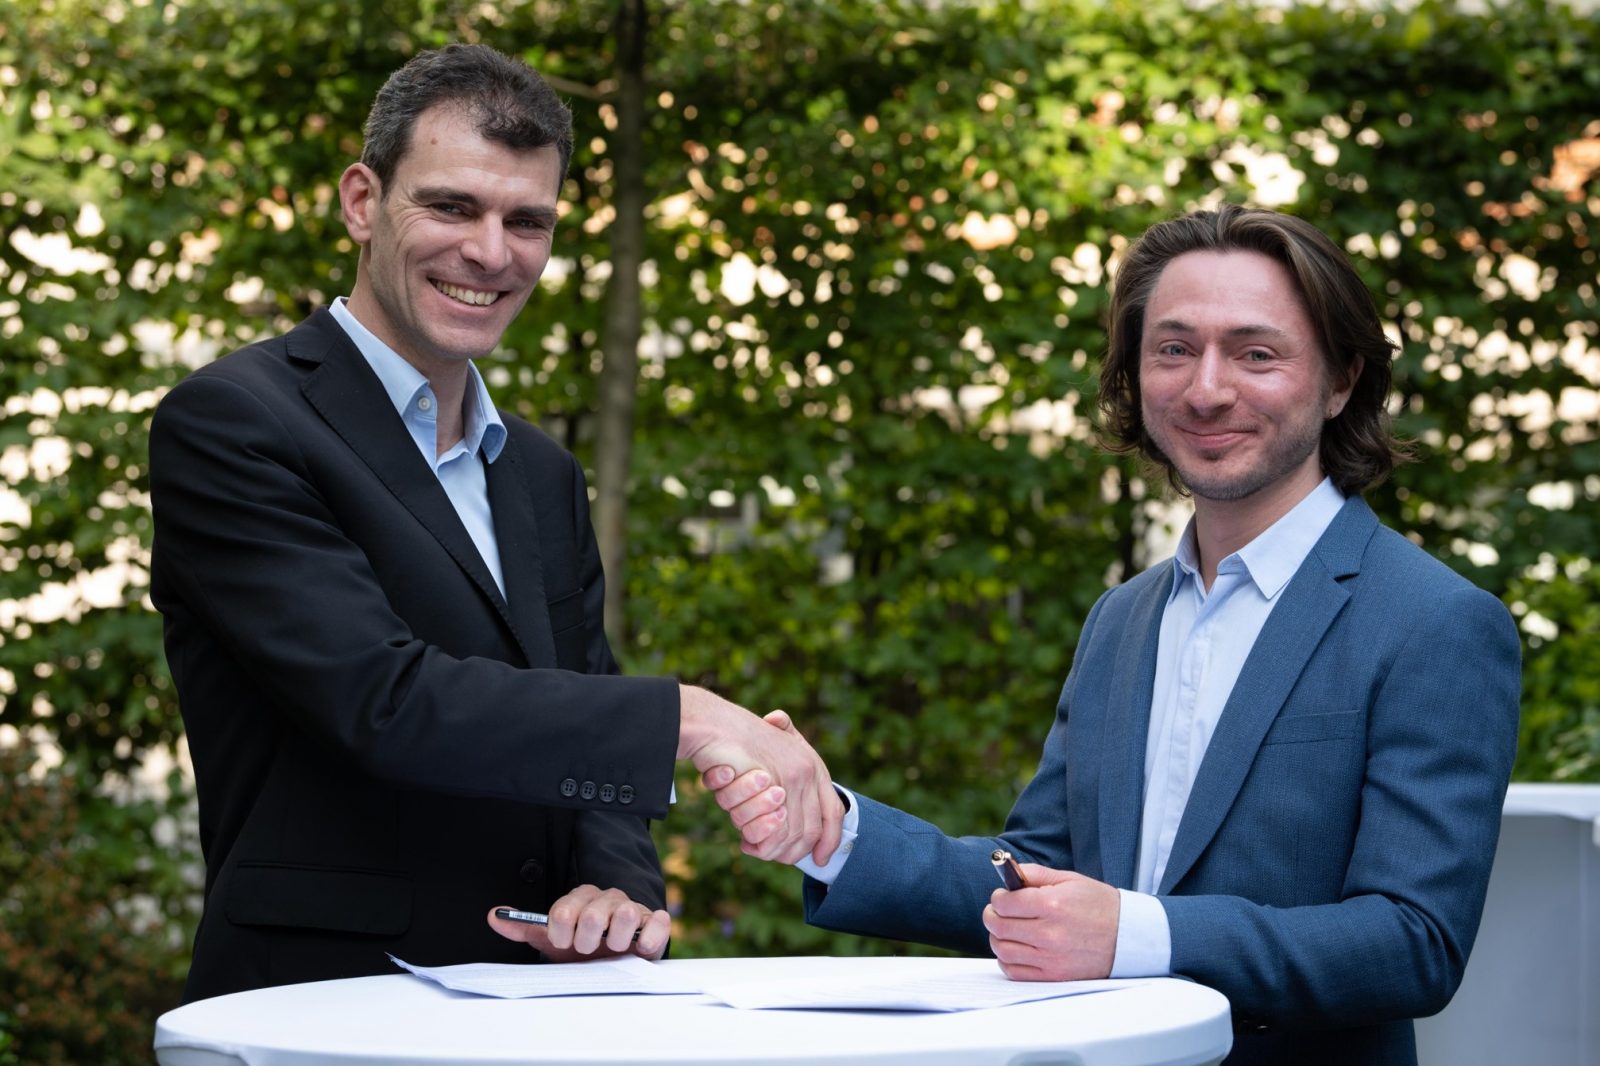 Pasqal کے CEO اور C-بانی Georges-Olivier Reymond (بائیں) اور Welinq کے CEO اور شریک بانی Tom Darras (دائیں) نے اپنی کمپنیوں کو باہم مربوط، ملٹی QPU سسٹمز کے مشترکہ مقصد کی طرف جوڑ دیا ہے۔ (ماخذ: پاسقال)